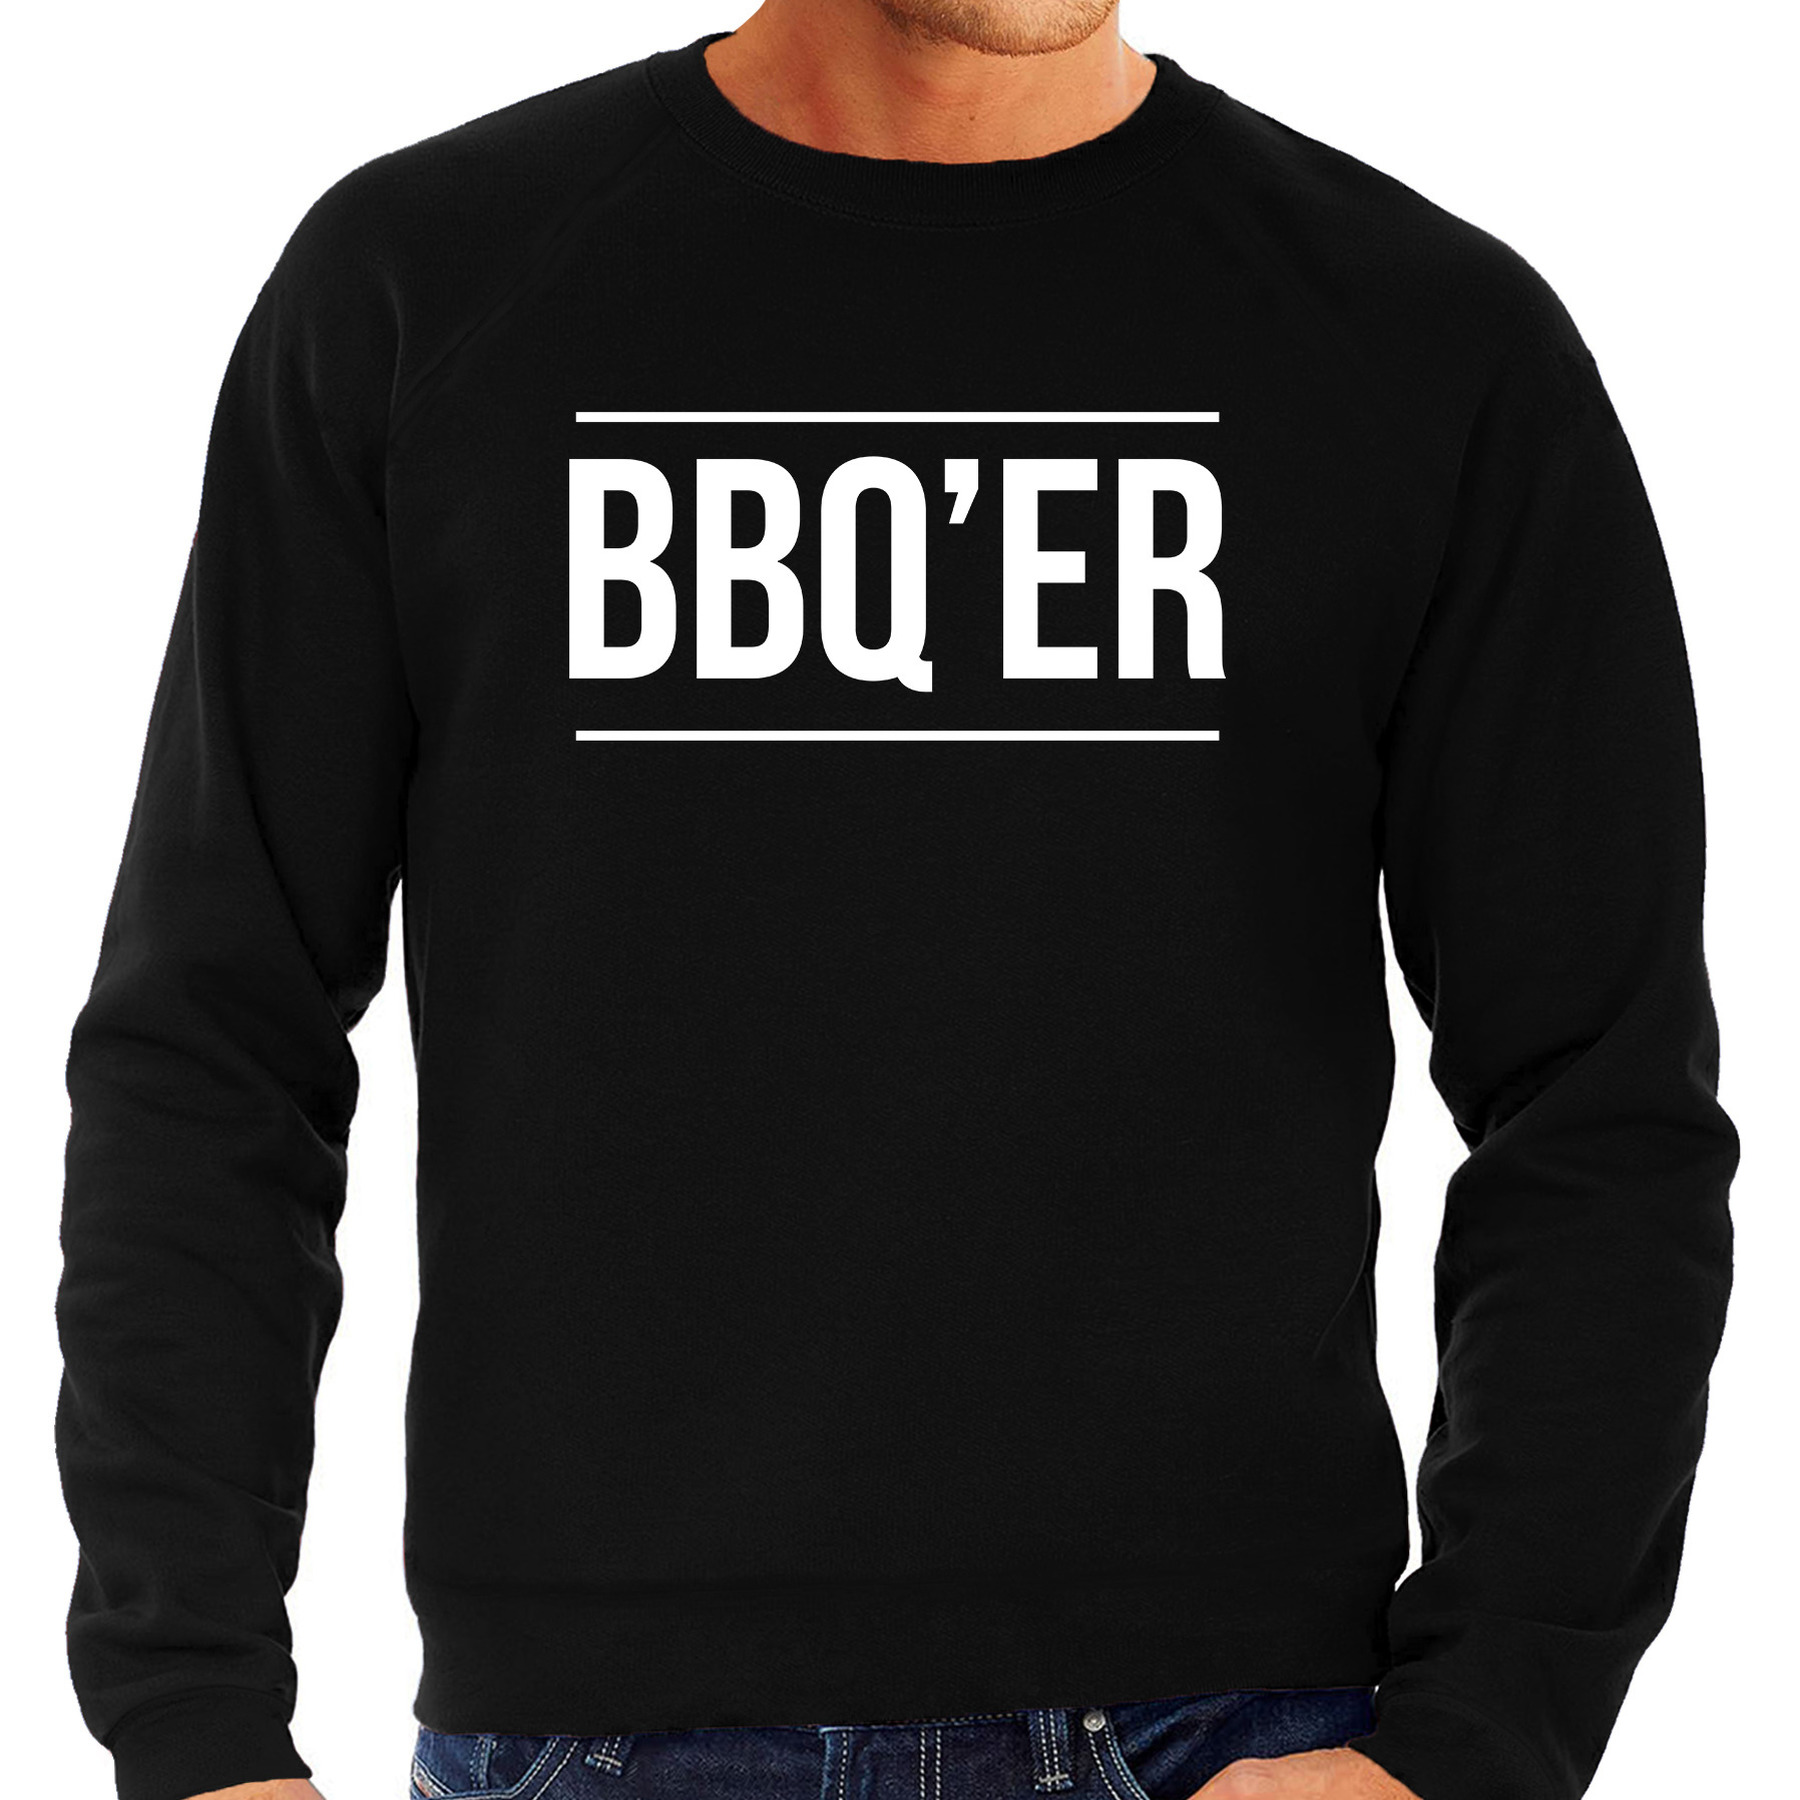 BBQ-ER bbq-barbecue cadeau sweater-trui zwart voor heren